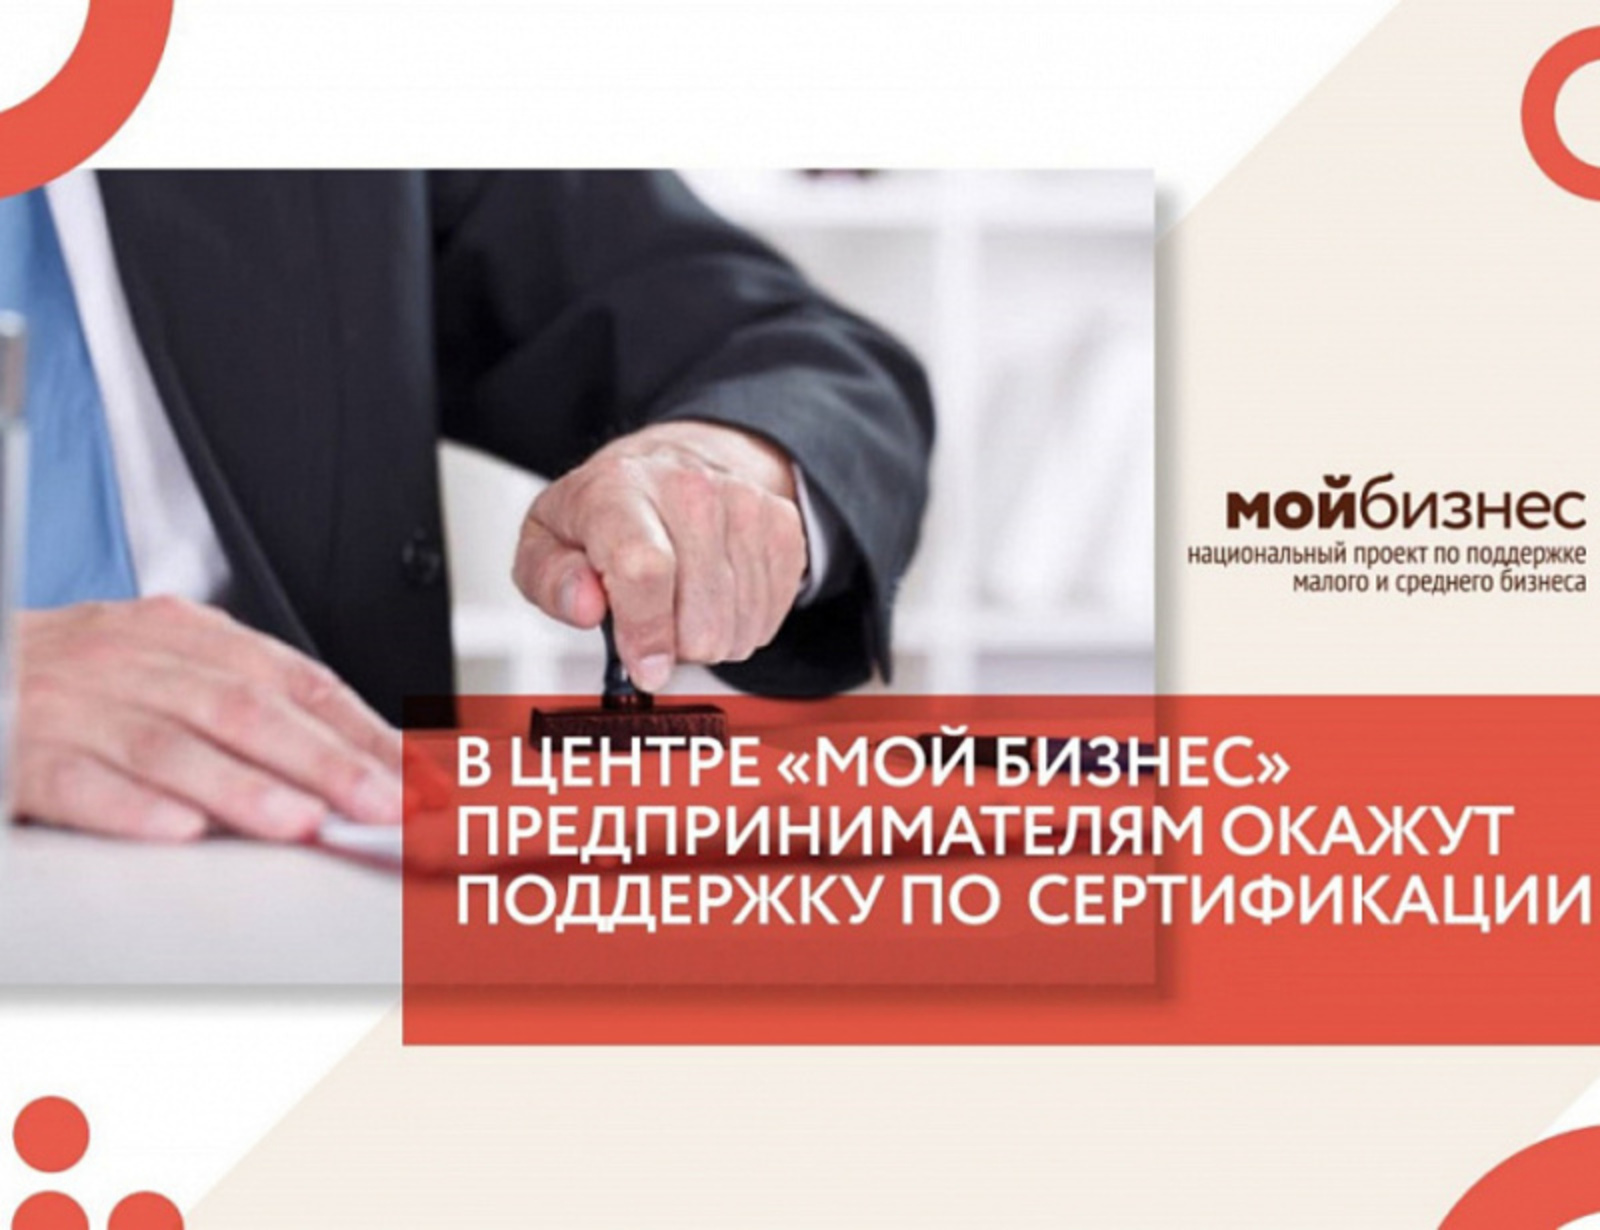 Предприниматели Башкортостана могут бесплатно получить услуги по сертификации